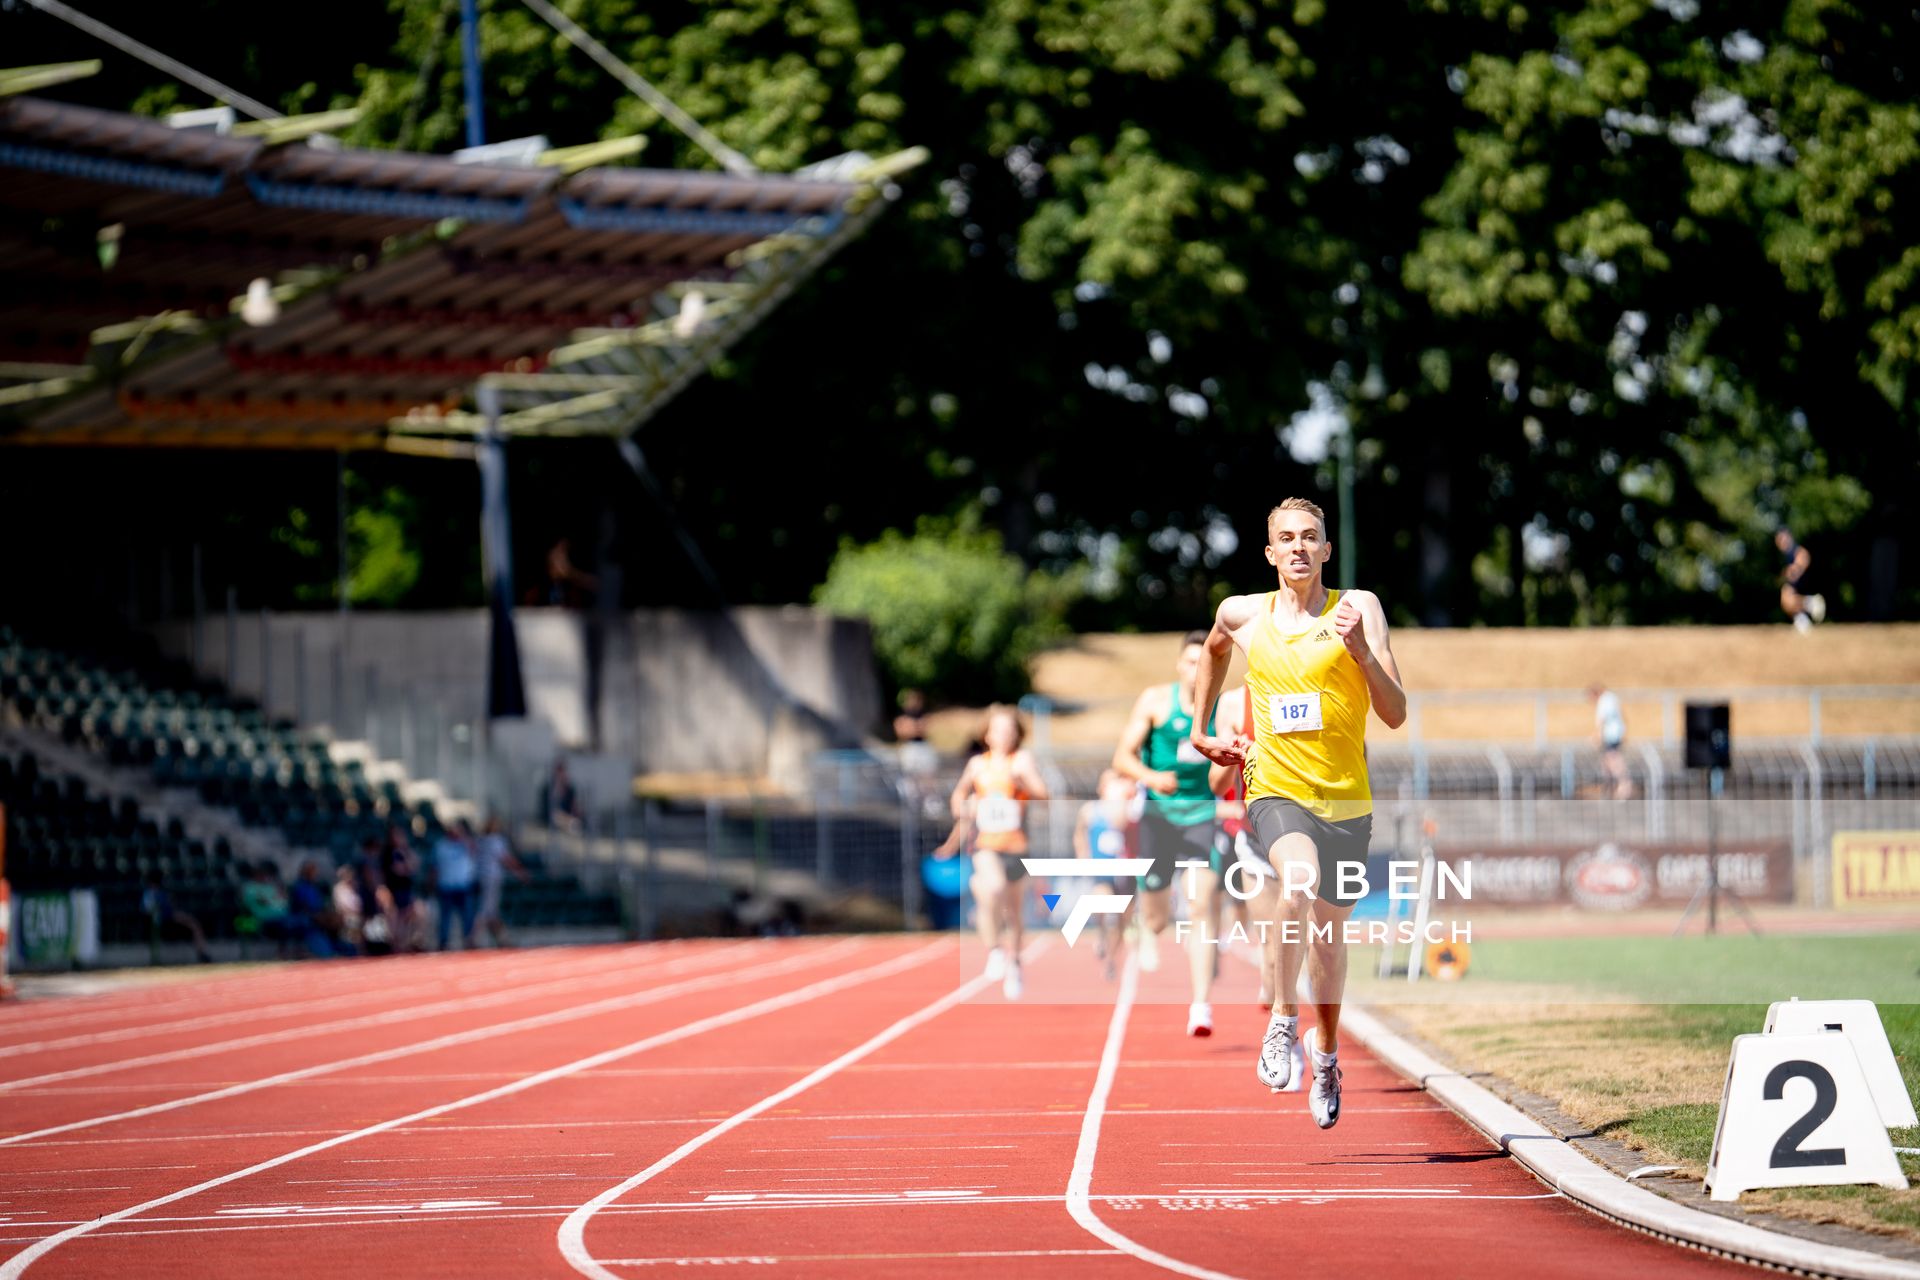 Luis Oberbeck (LG Goettingen) ueber 800m am 03.07.2022 waehrend den NLV+BLV Leichtathletik-Landesmeisterschaften im Jahnstadion in Goettingen (Tag 1)